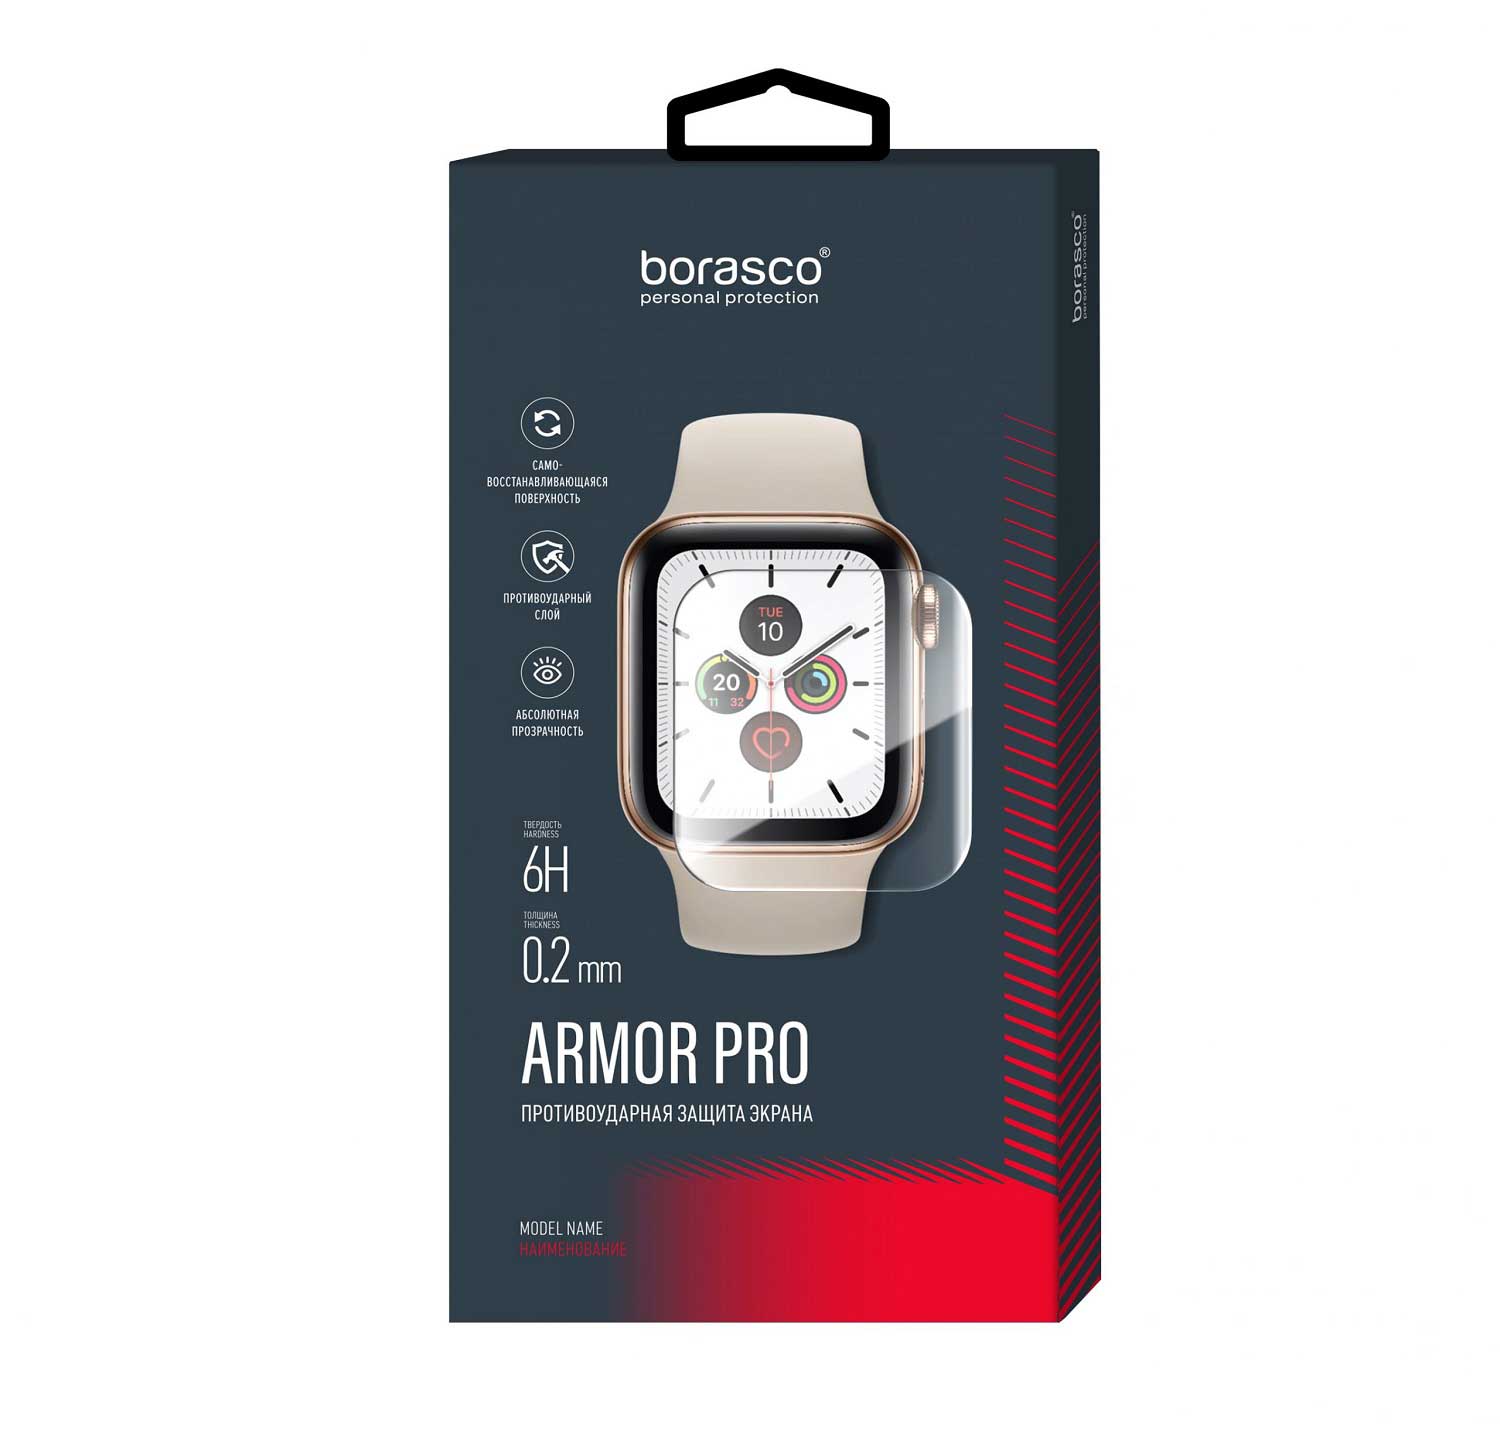 Защита экрана BoraSCO Armor Pro для Xiaomi Mi Band 6 защита экрана borasco armor pro для honor band 6